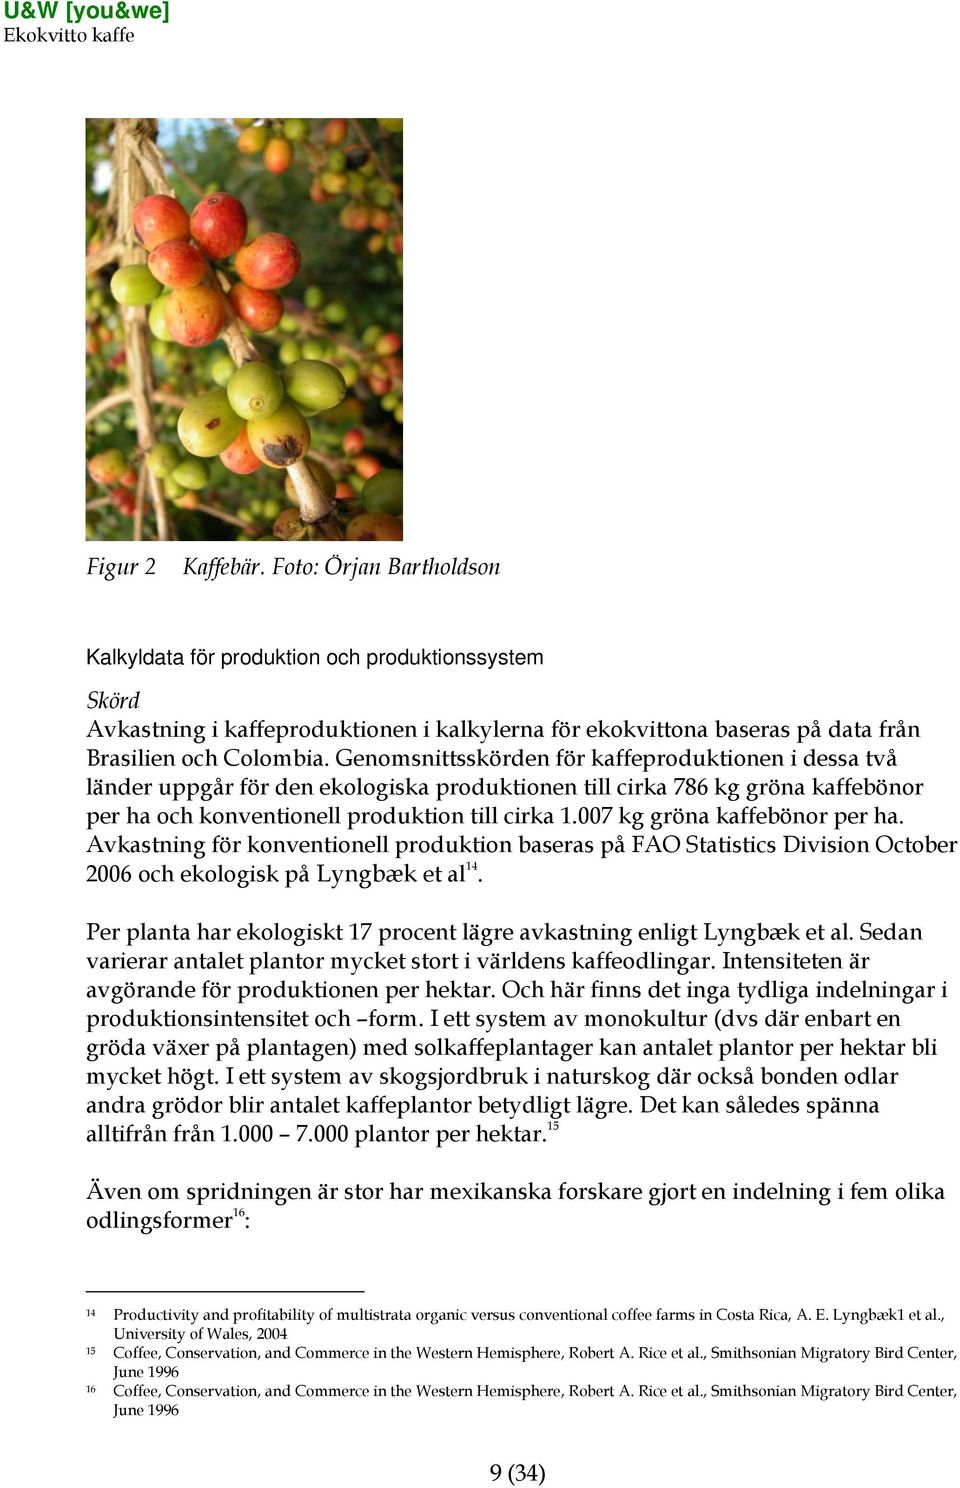 007 kg gröna kaffebönor per ha. Avkastning för konventionell produktion baseras på FAO Statistics Division October 2006 och ekologisk på Lyngbæk et al 14.